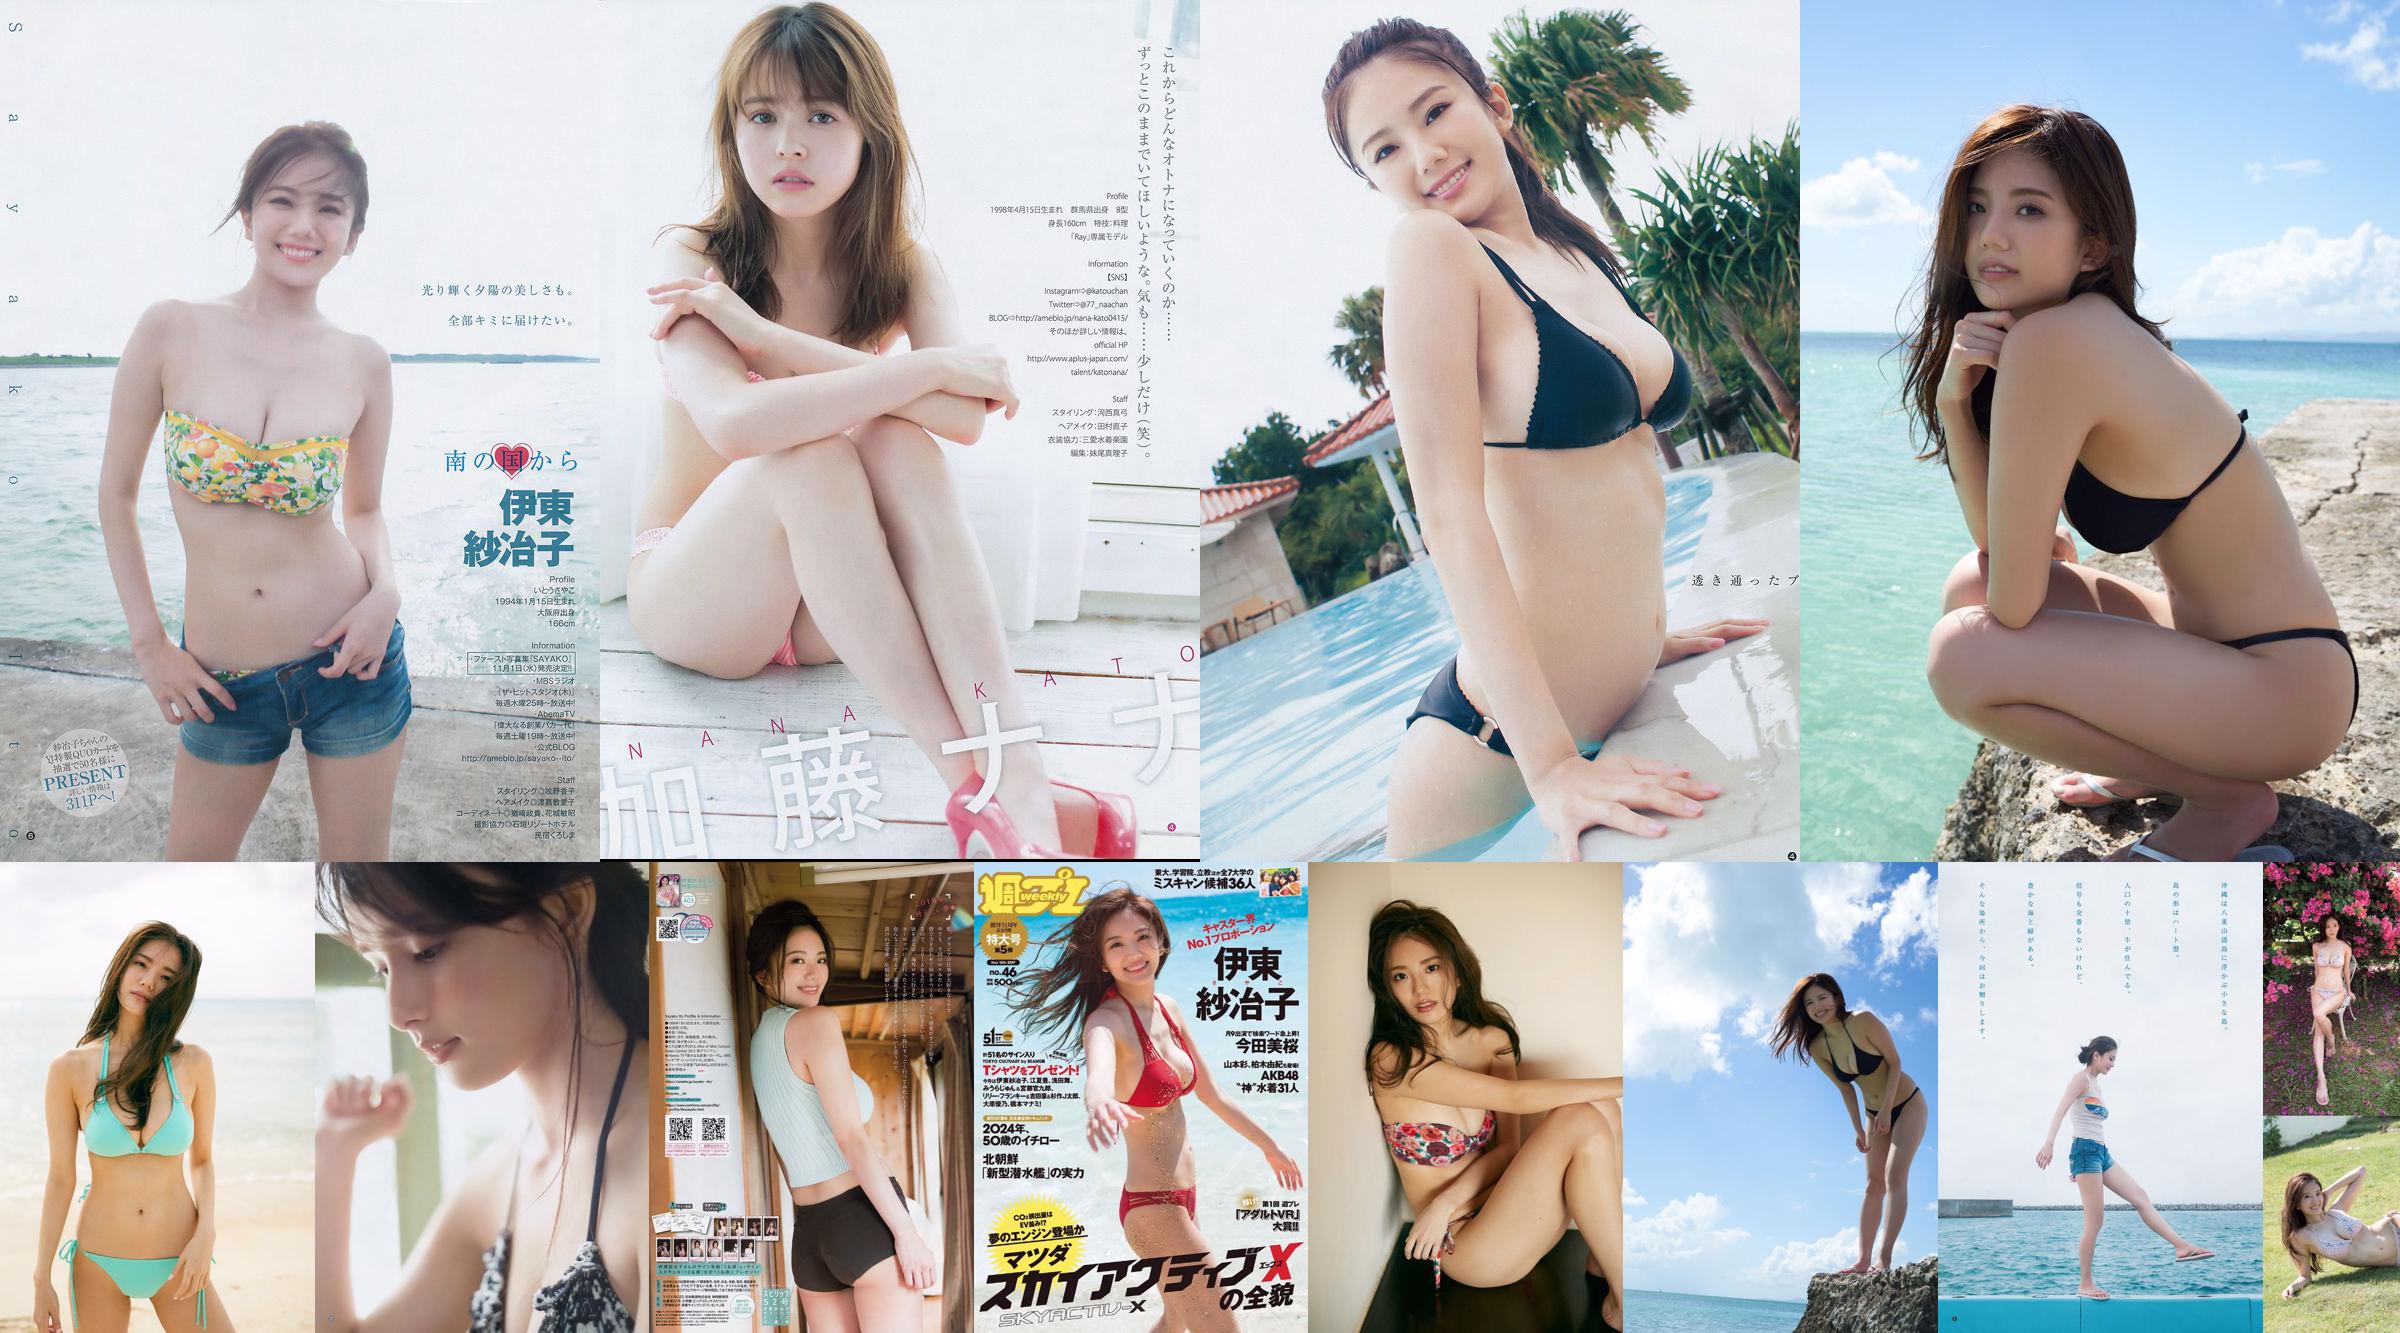 Ito Sayeko, Mima Reiko, Sugimoto Yumi, Sato Reina, Yoshiki りさ Toyama Akiko, Naninao [Weekly Playboy] 2016 No.36 Photo Magazine No.8590b7 Page 10